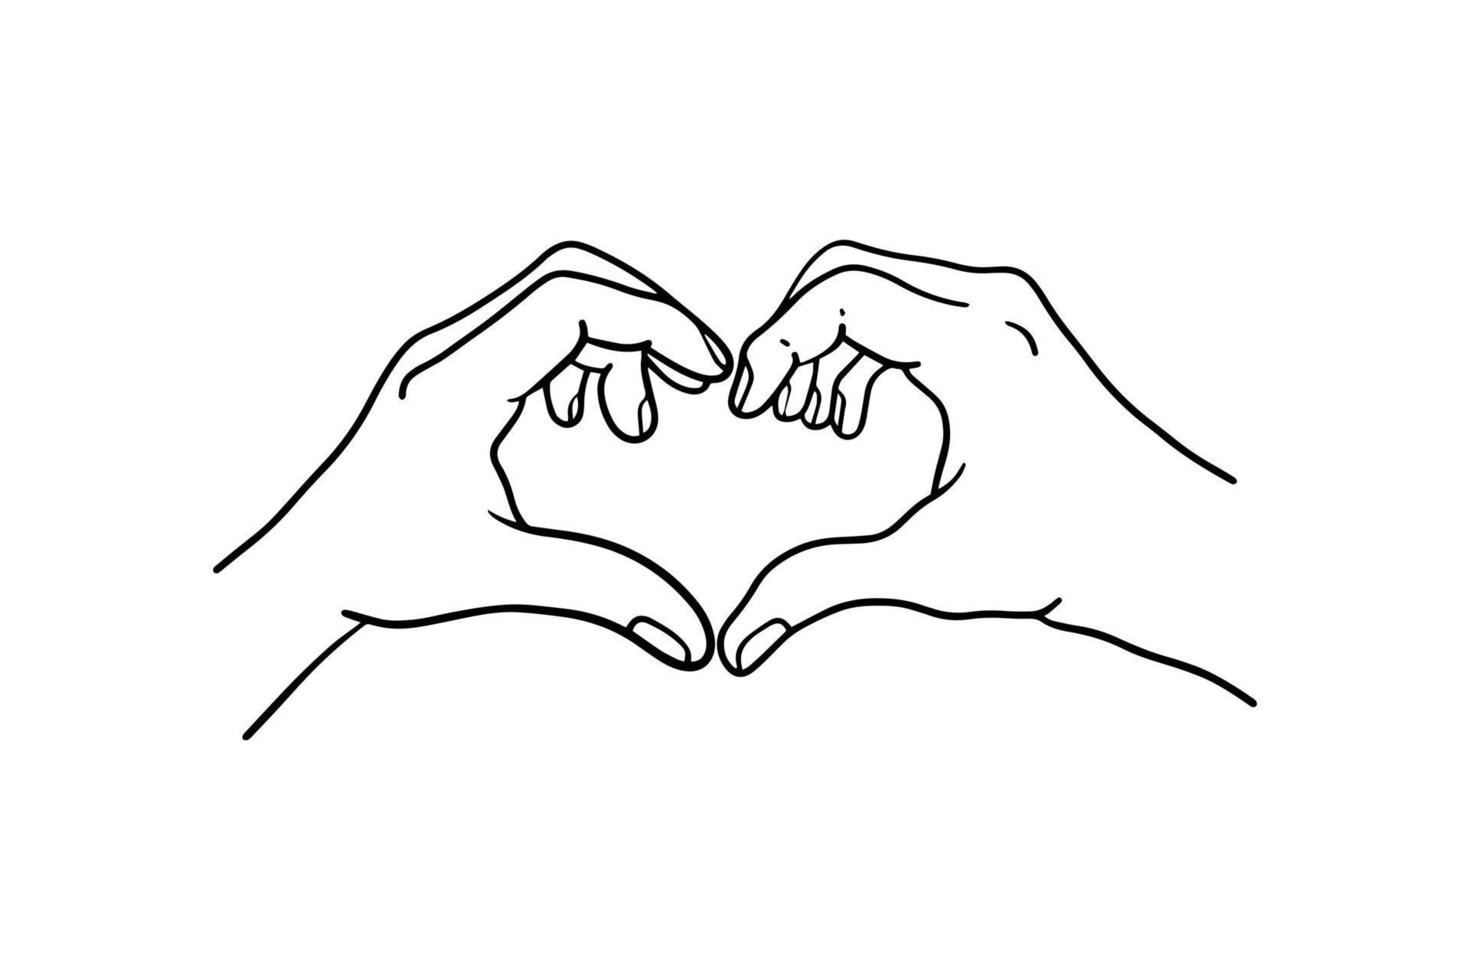 två händer form en symbol av kärlek och vård. vektor